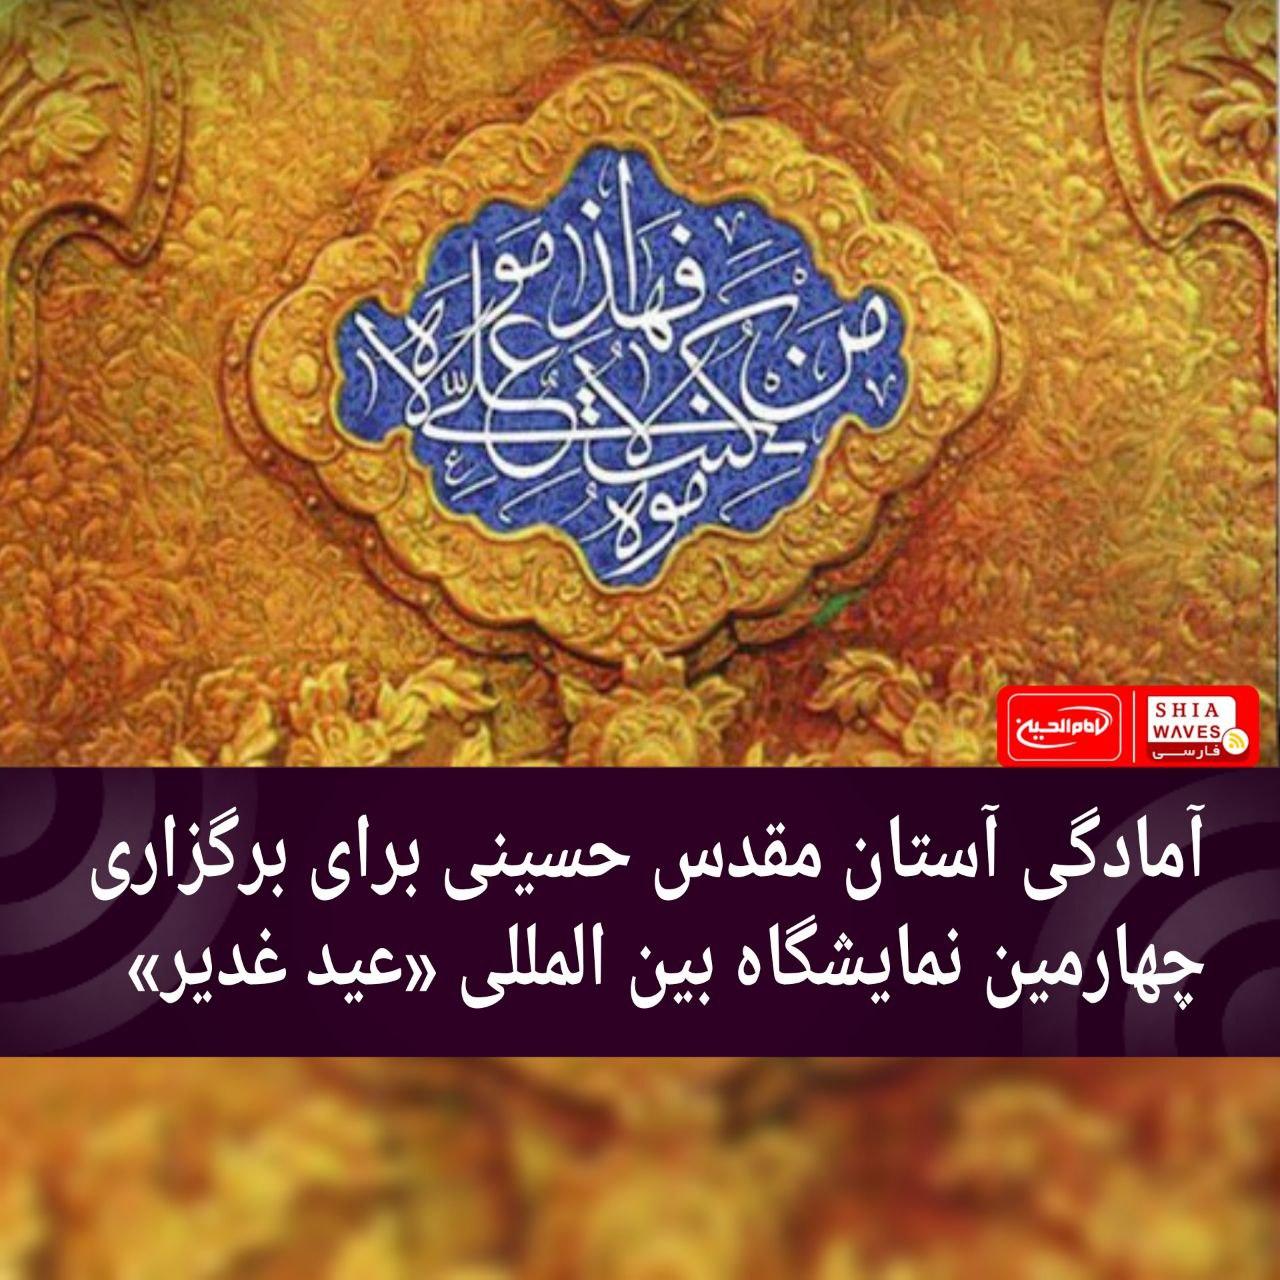 تصویر آمادگی آستان مقدس حسینی برای برگزاری چهارمین نمایشگاه بین المللی عید غدیر